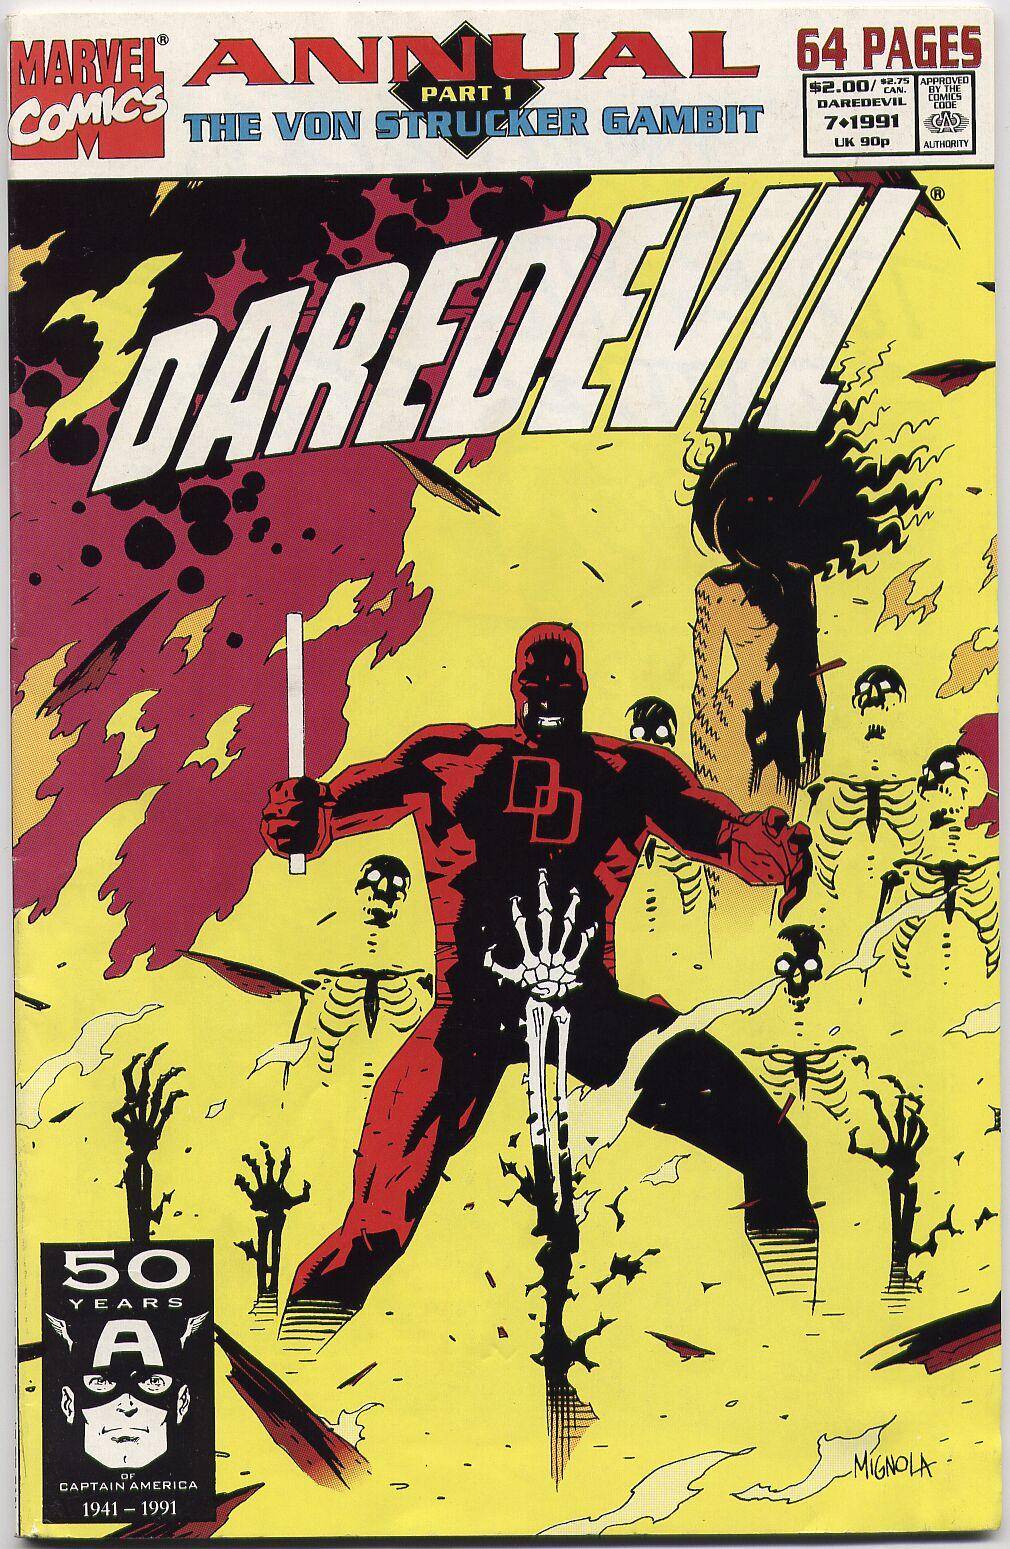 Daredevil v1 Annual 07 1991 The Von Strucker Gambit Part 1